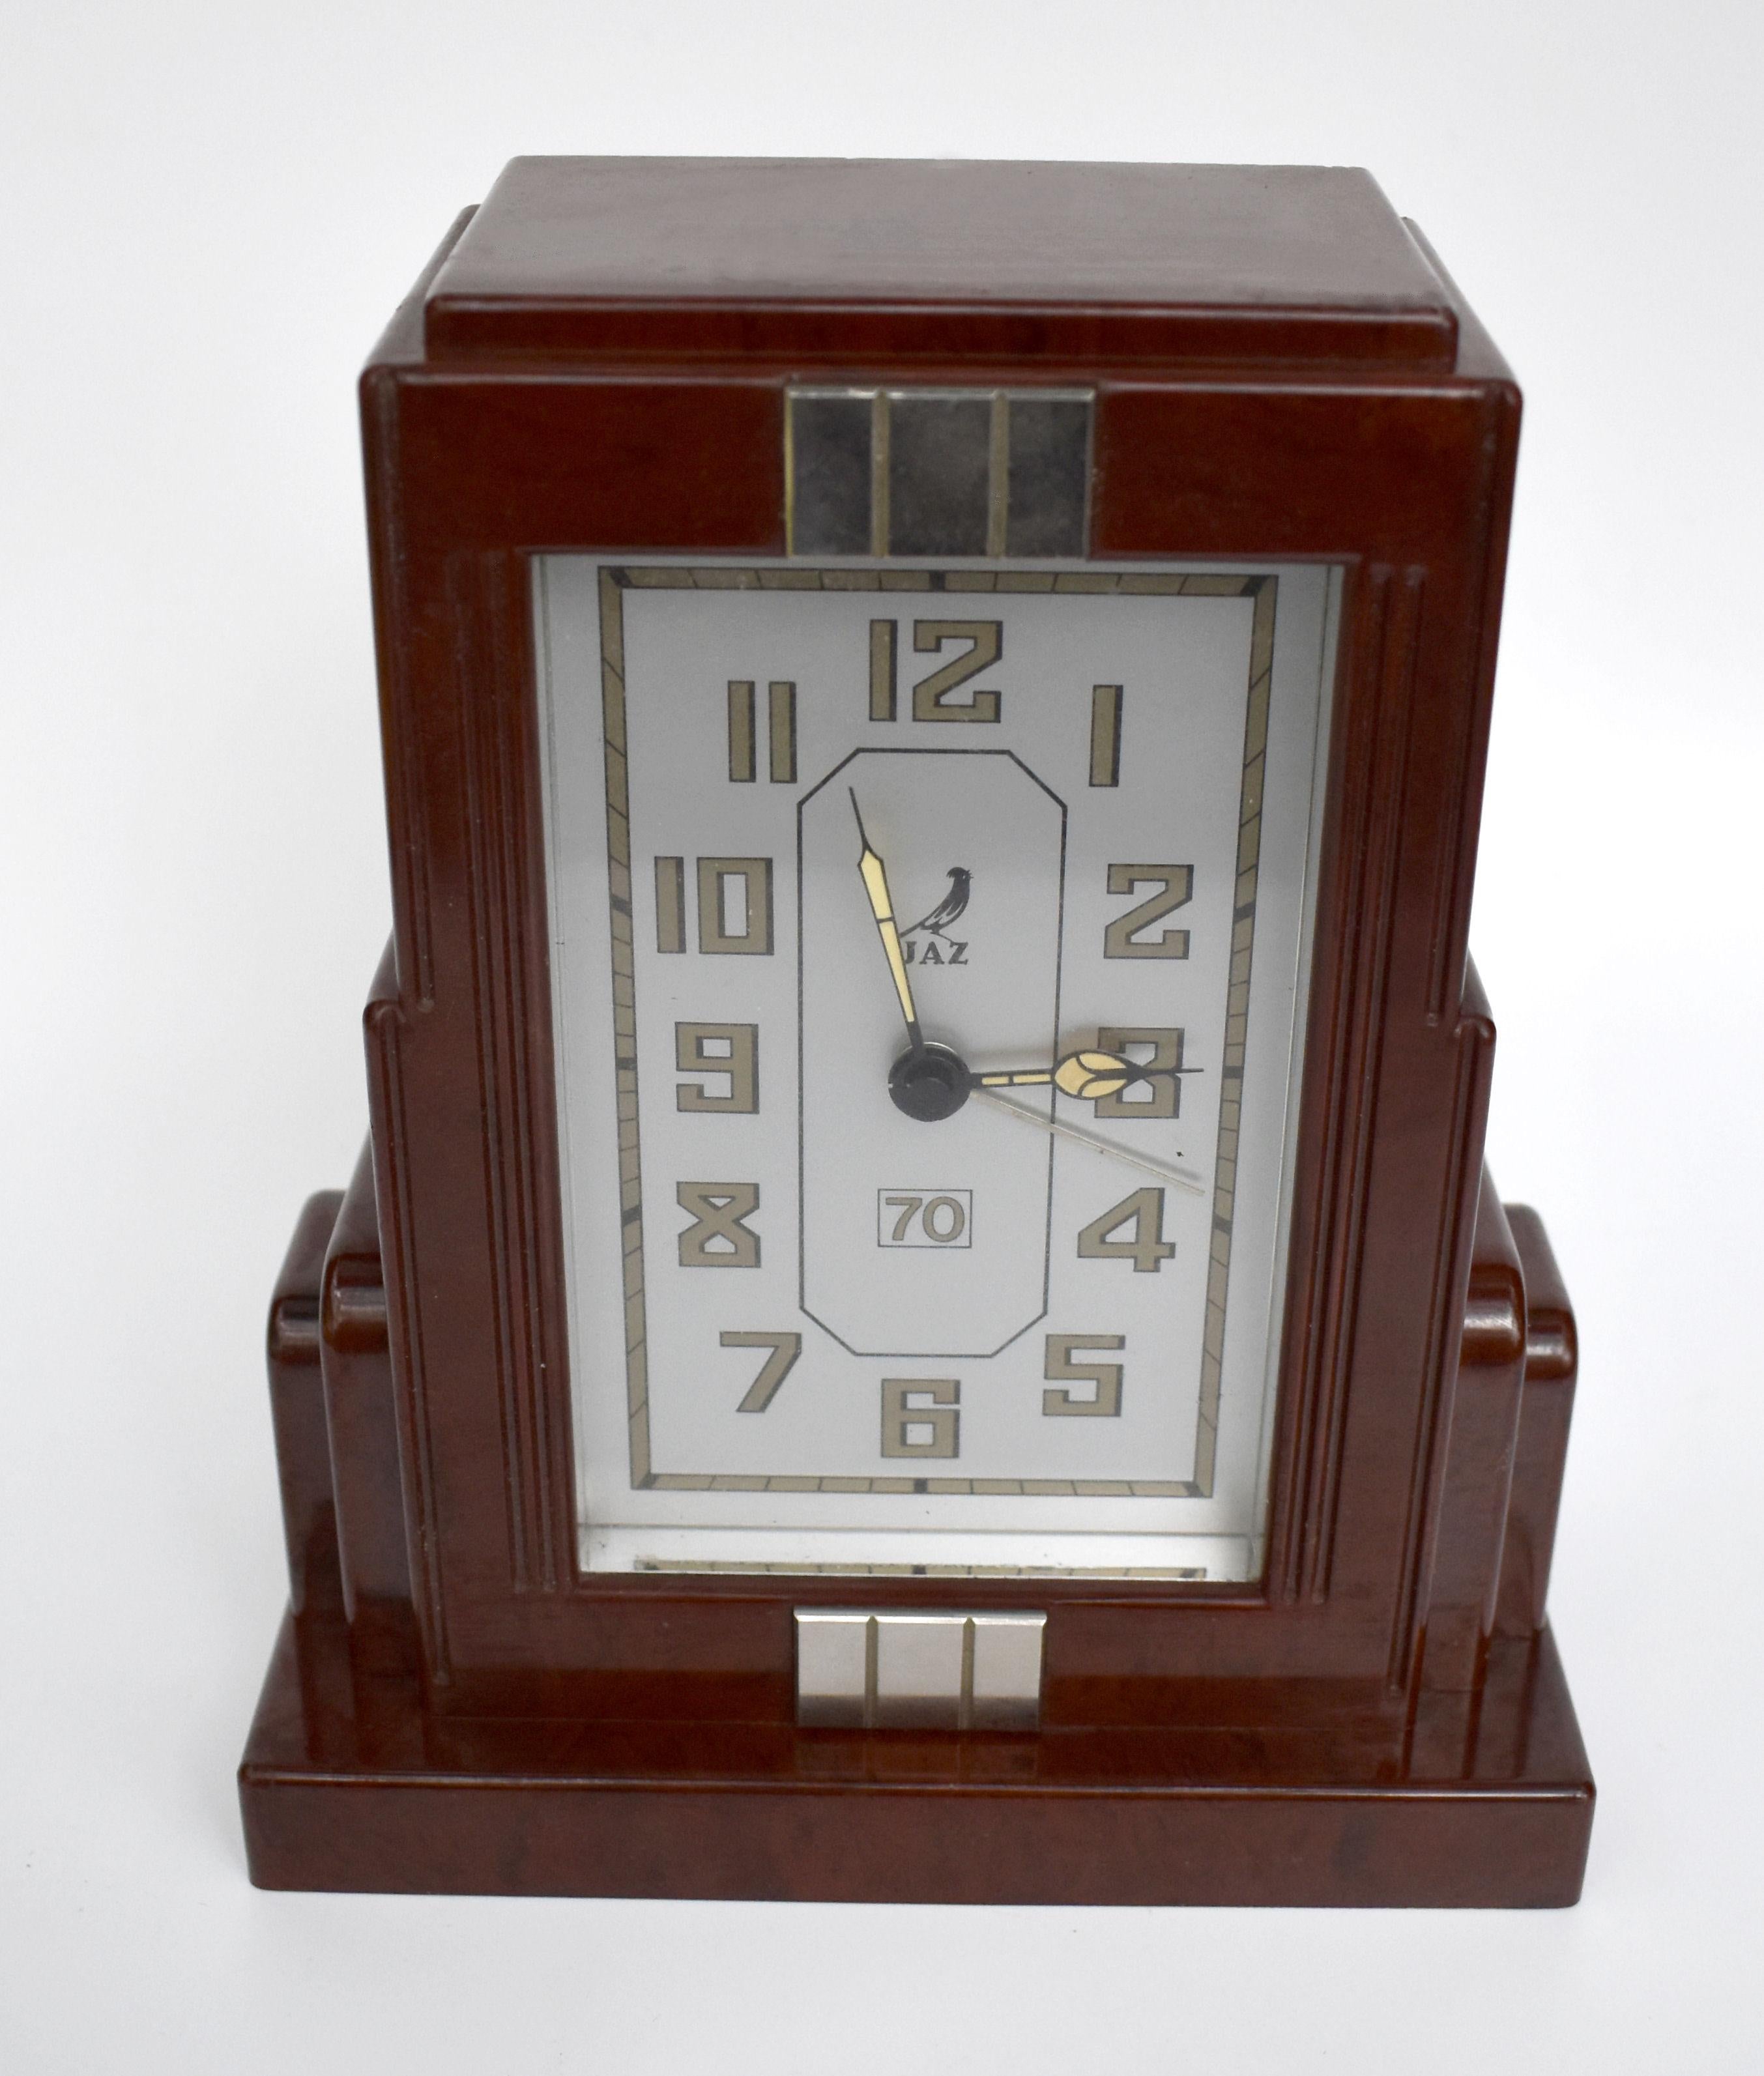 Fabelhafte Art-Déco-Uhr von JAZ, einem französischen Uhrenhersteller. Diese Uhr ist aus rotem Bakelit und hat ein wunderschönes wolkenkratzerförmiges Gehäuse. Der Zustand des Gesichts ist besonders gut und zeigt wenig bis keine Anzeichen seines